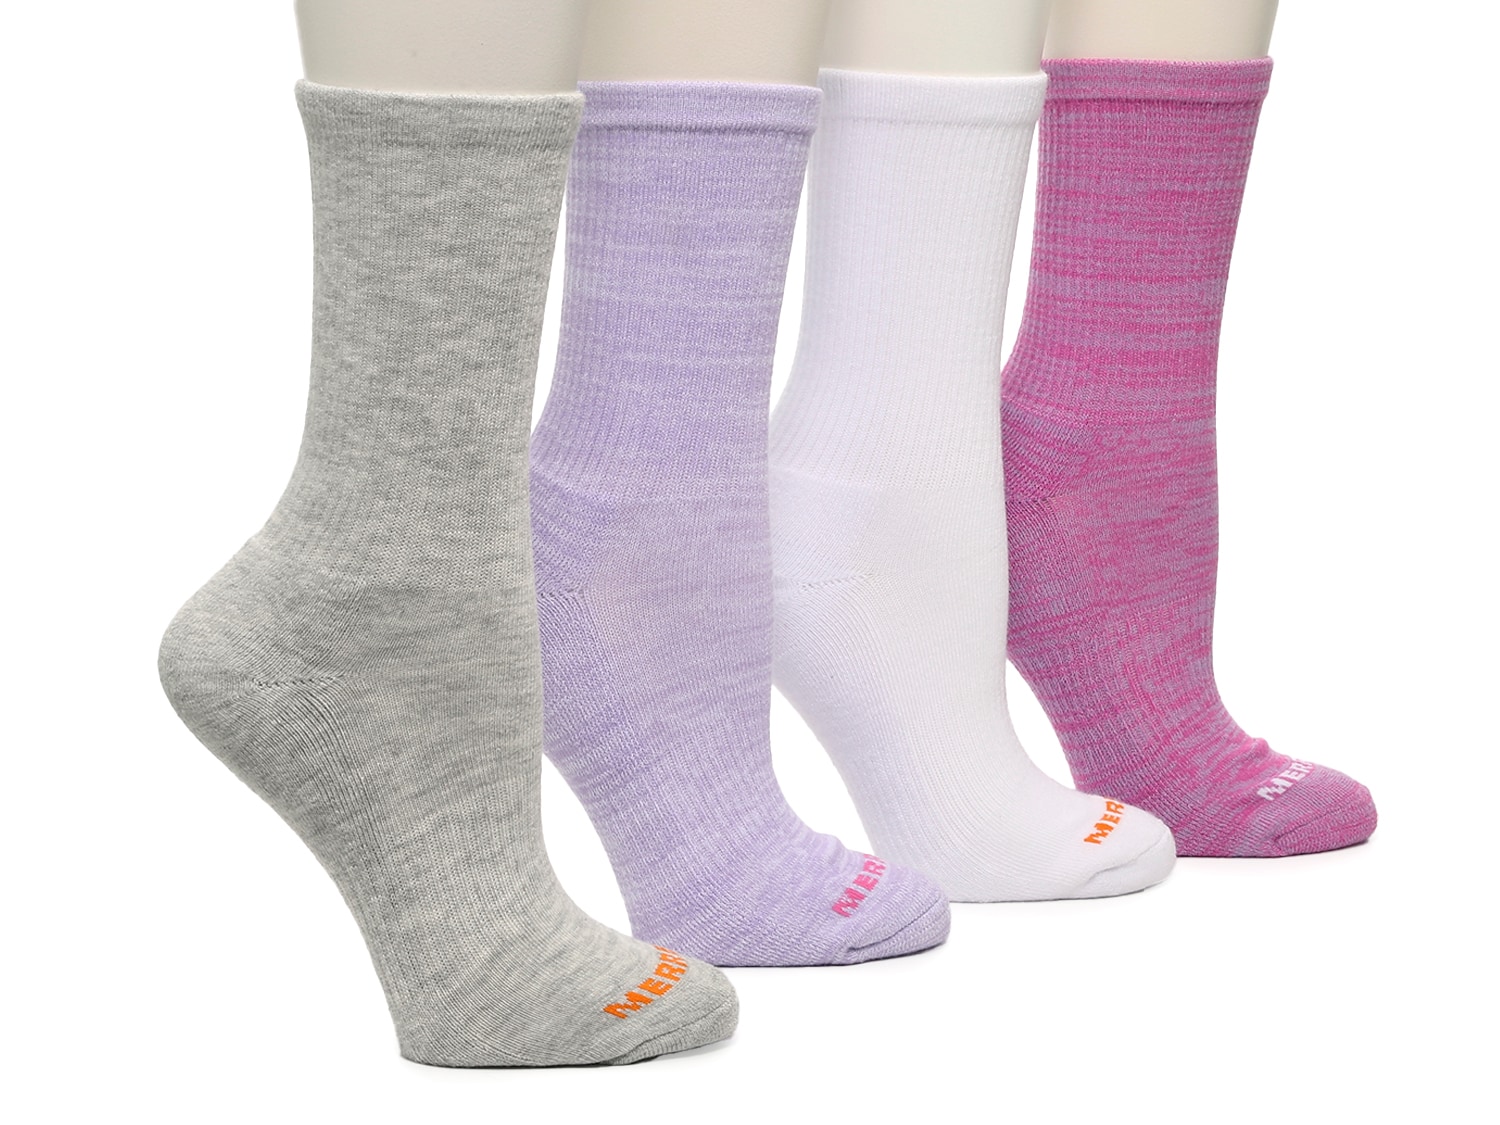 Merrell Quarter Women's Ankle Socks - 4 Pack - Free Shipping